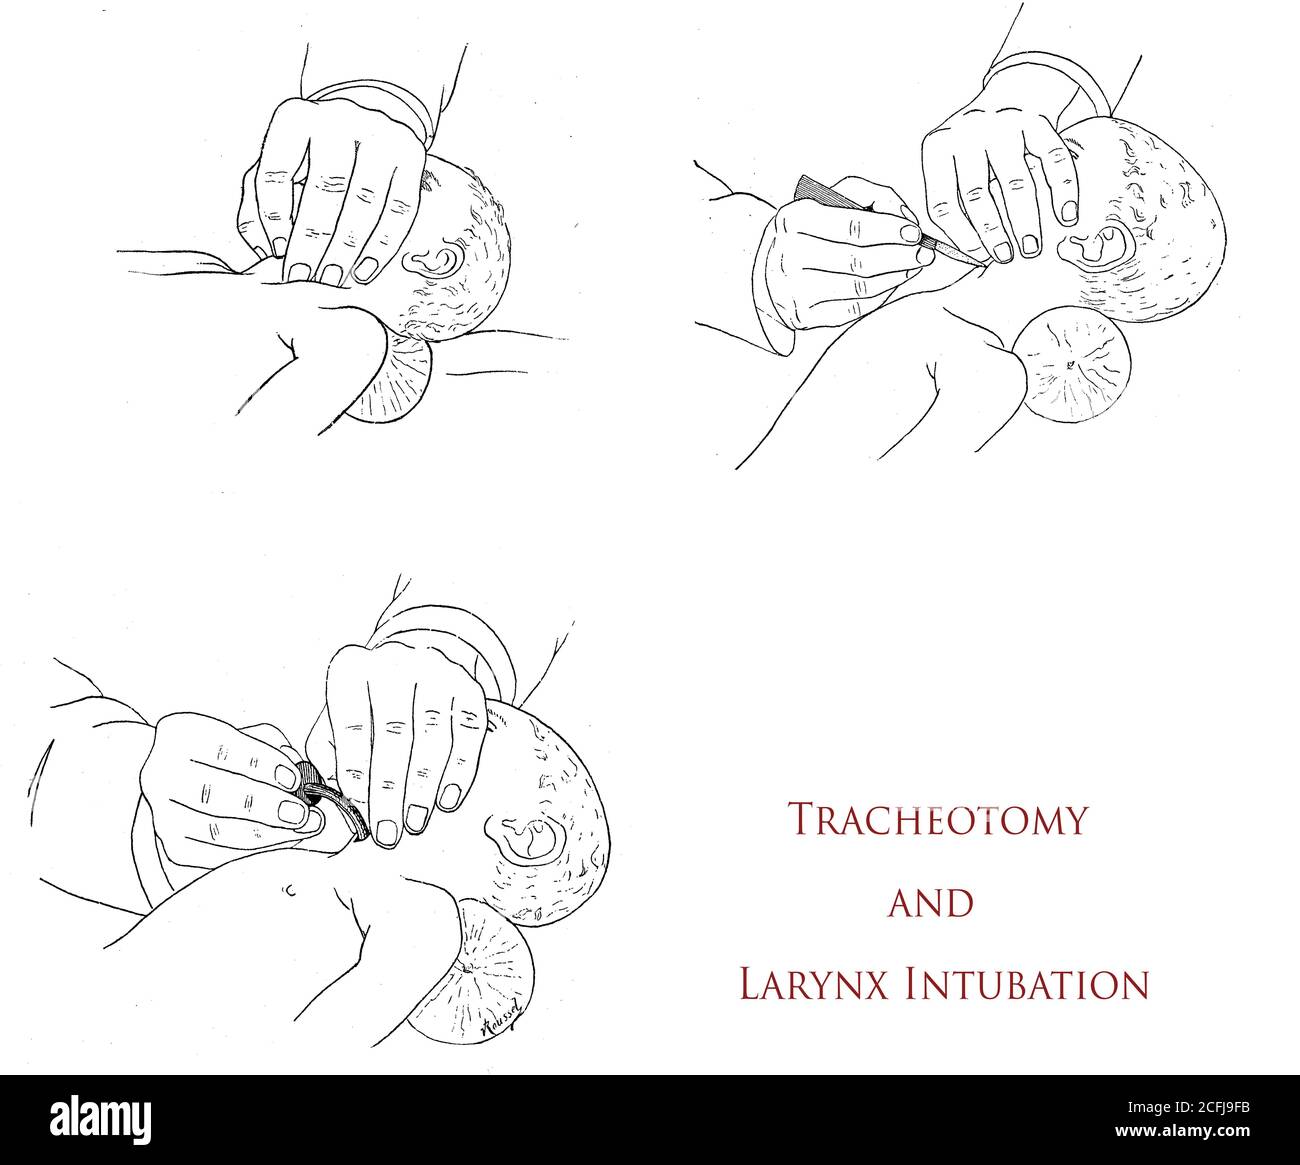 Gesundheitswesen und Medizin: Tracheotomie und Kehlkopfintubation, drei Schritte Zeichnungen erklären, wie die Notfalloperation durchzuführen Stockfoto